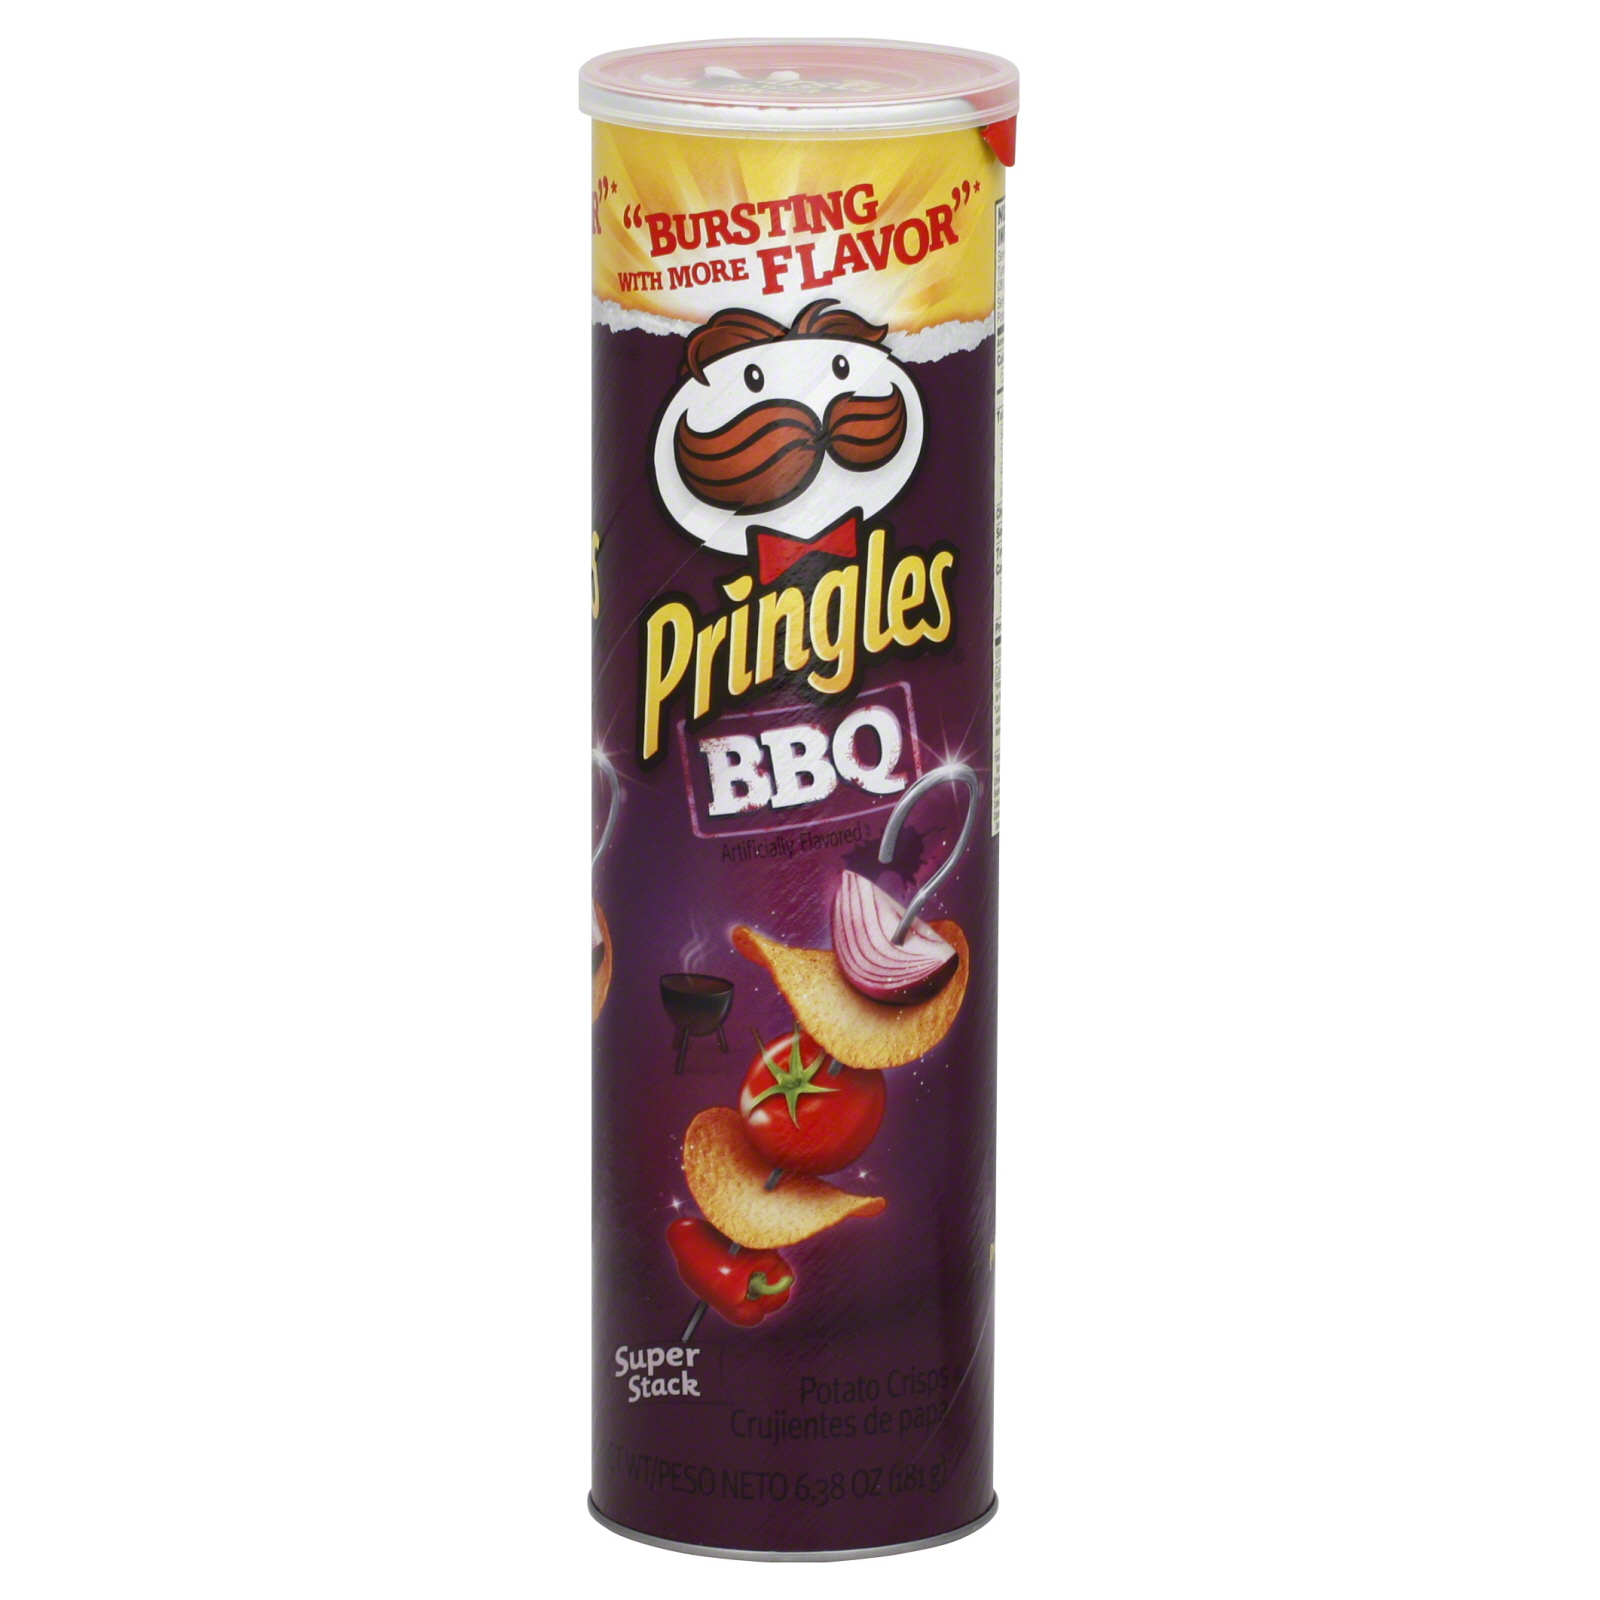 Pringles Potato Crisps, BBQ, Super Stack, 6.38 oz (181 g)